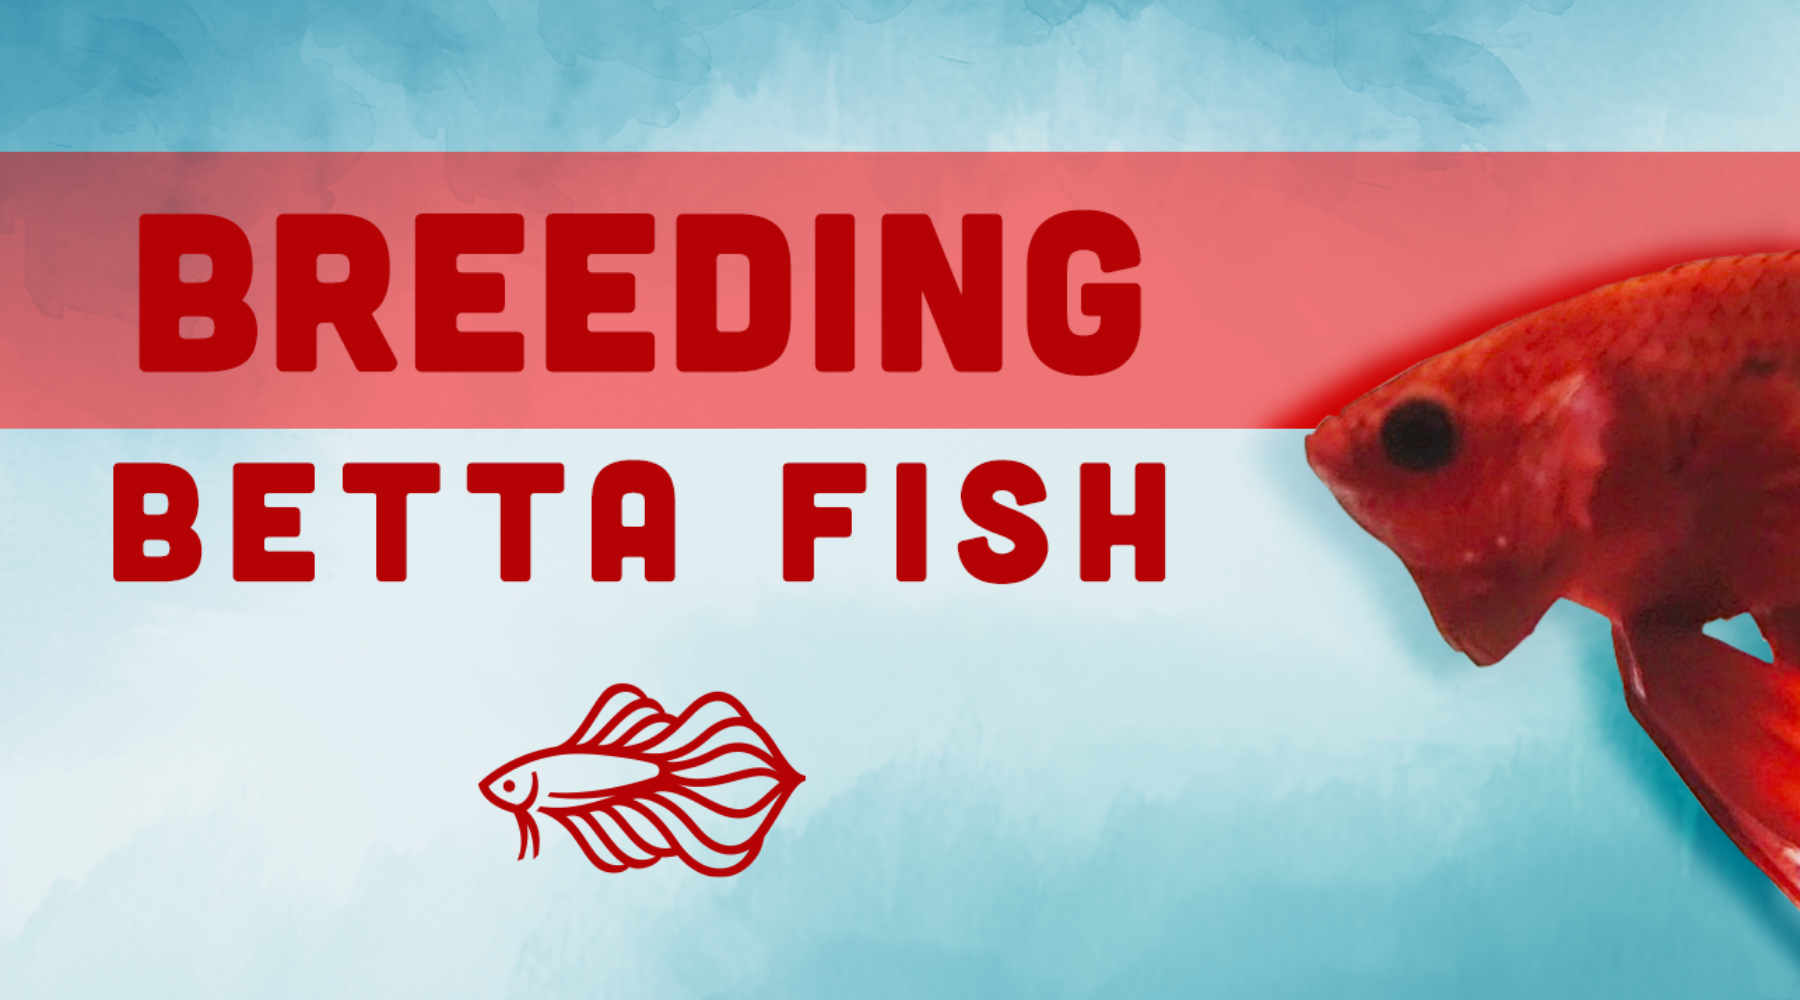 breeding betta fish